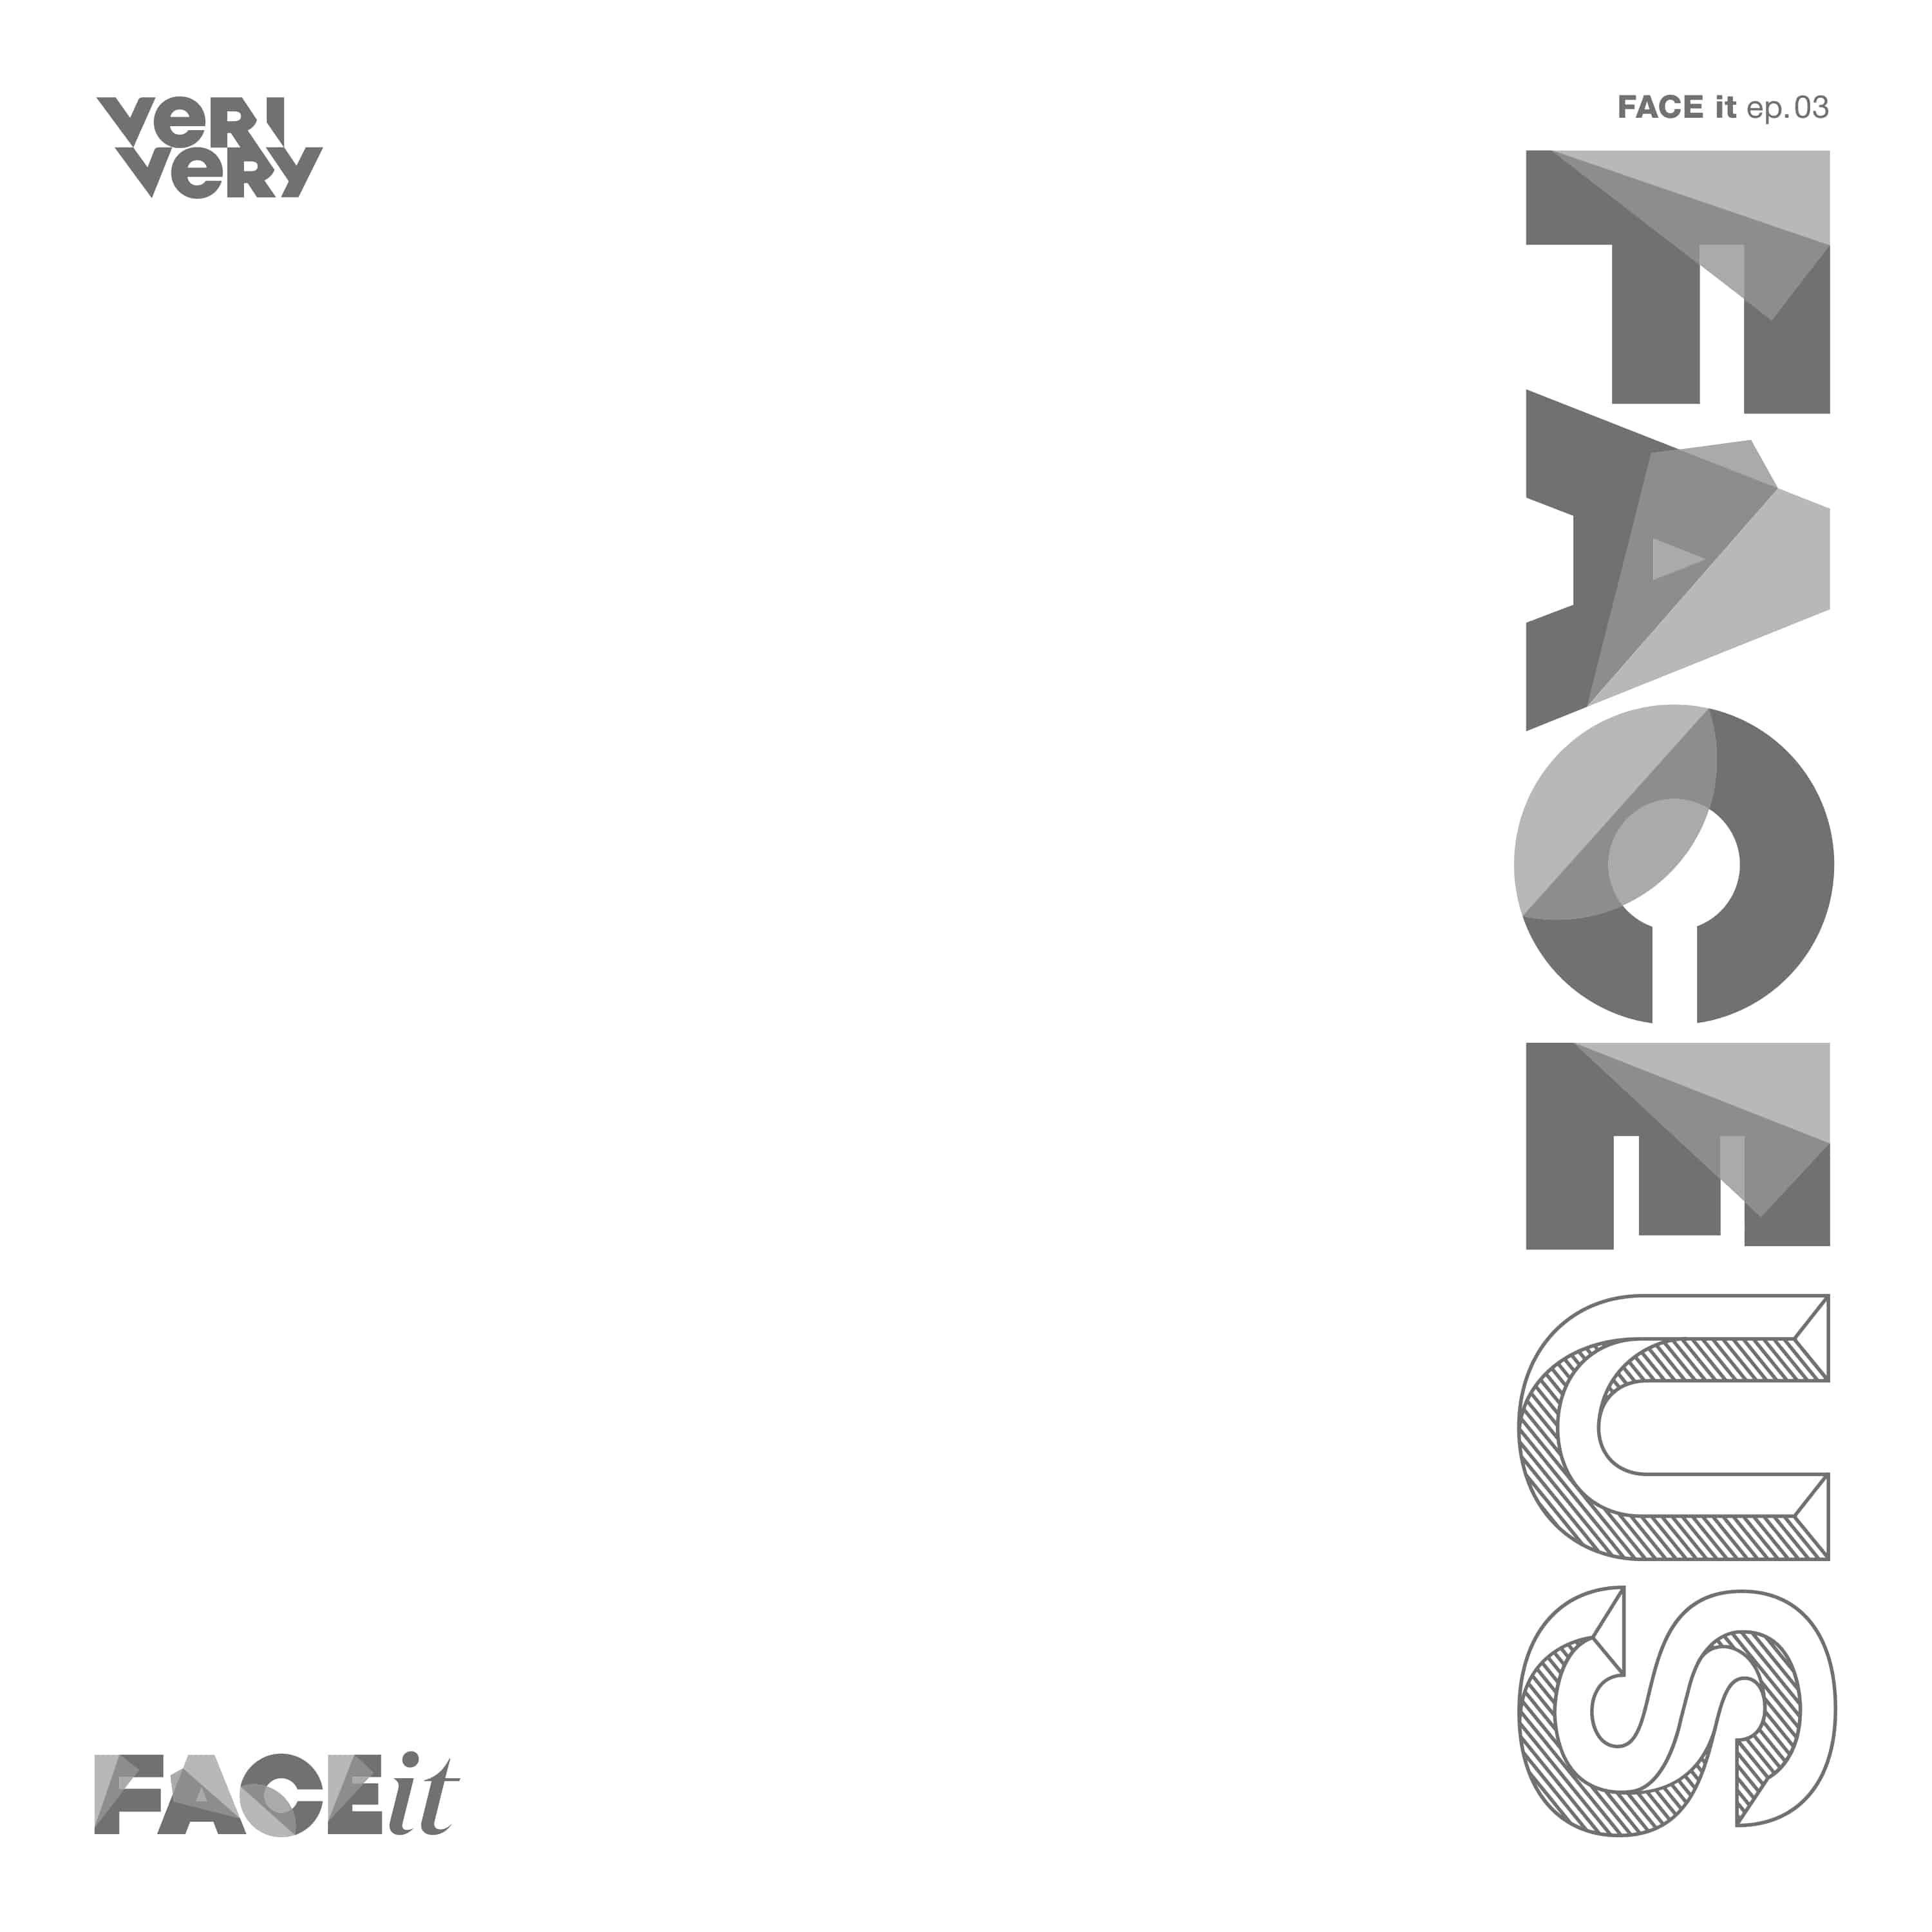 베리베리(VERIVERY) - 미니앨범 5집 [FACE US] (DIY Ver.)